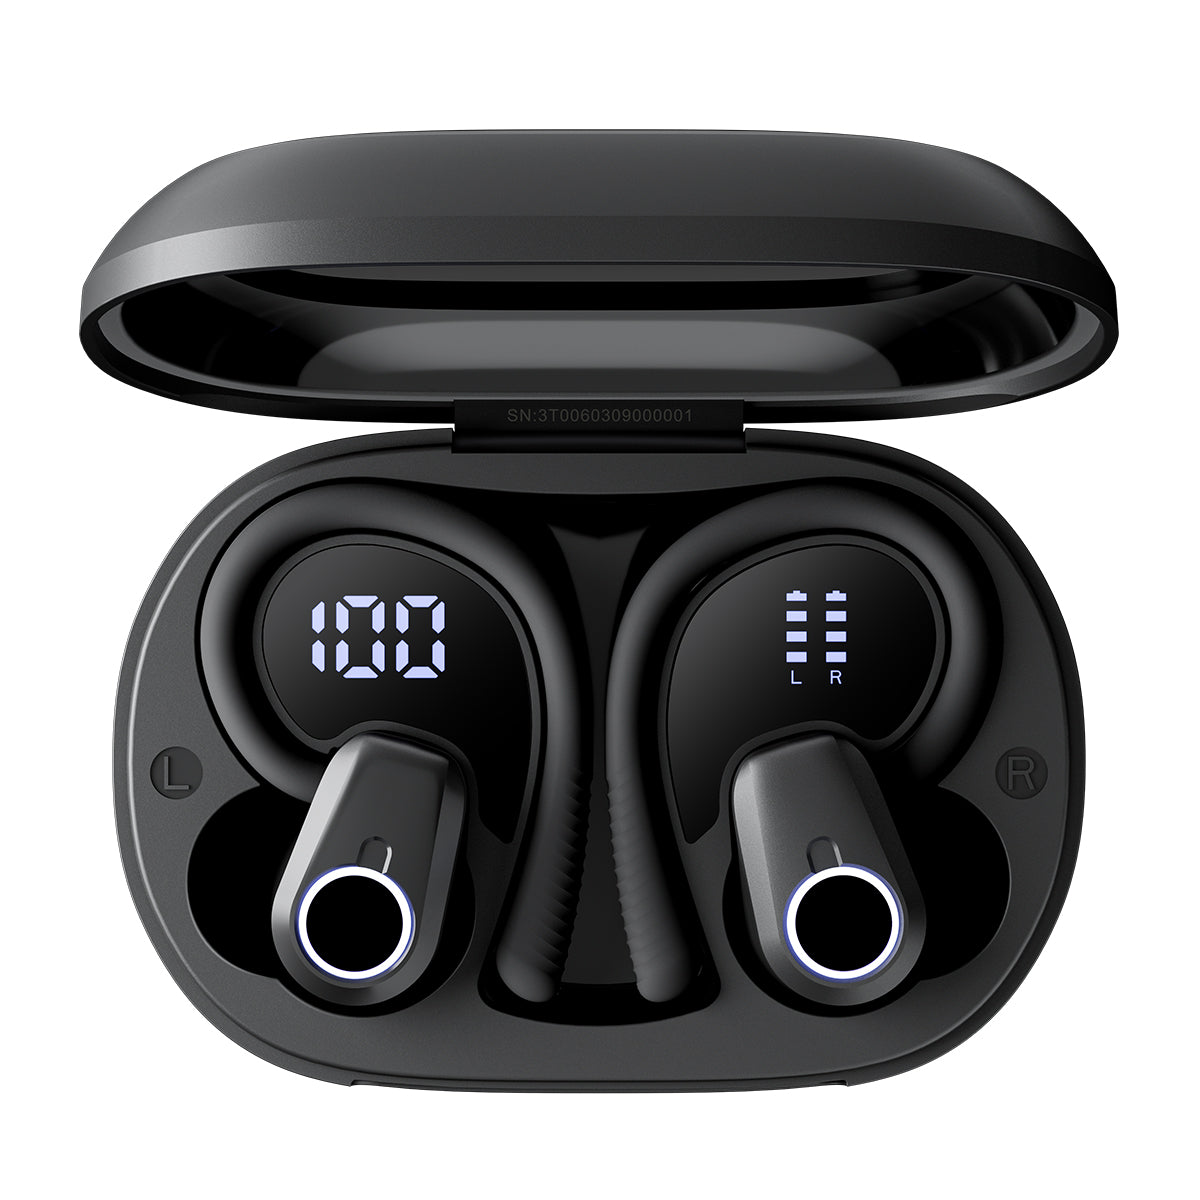 Blackview AirBuds 60 - Écouteurs TWS demi-auriculaires Bluetooth 5.3 étanches IPX4 avec crochets d'oreille